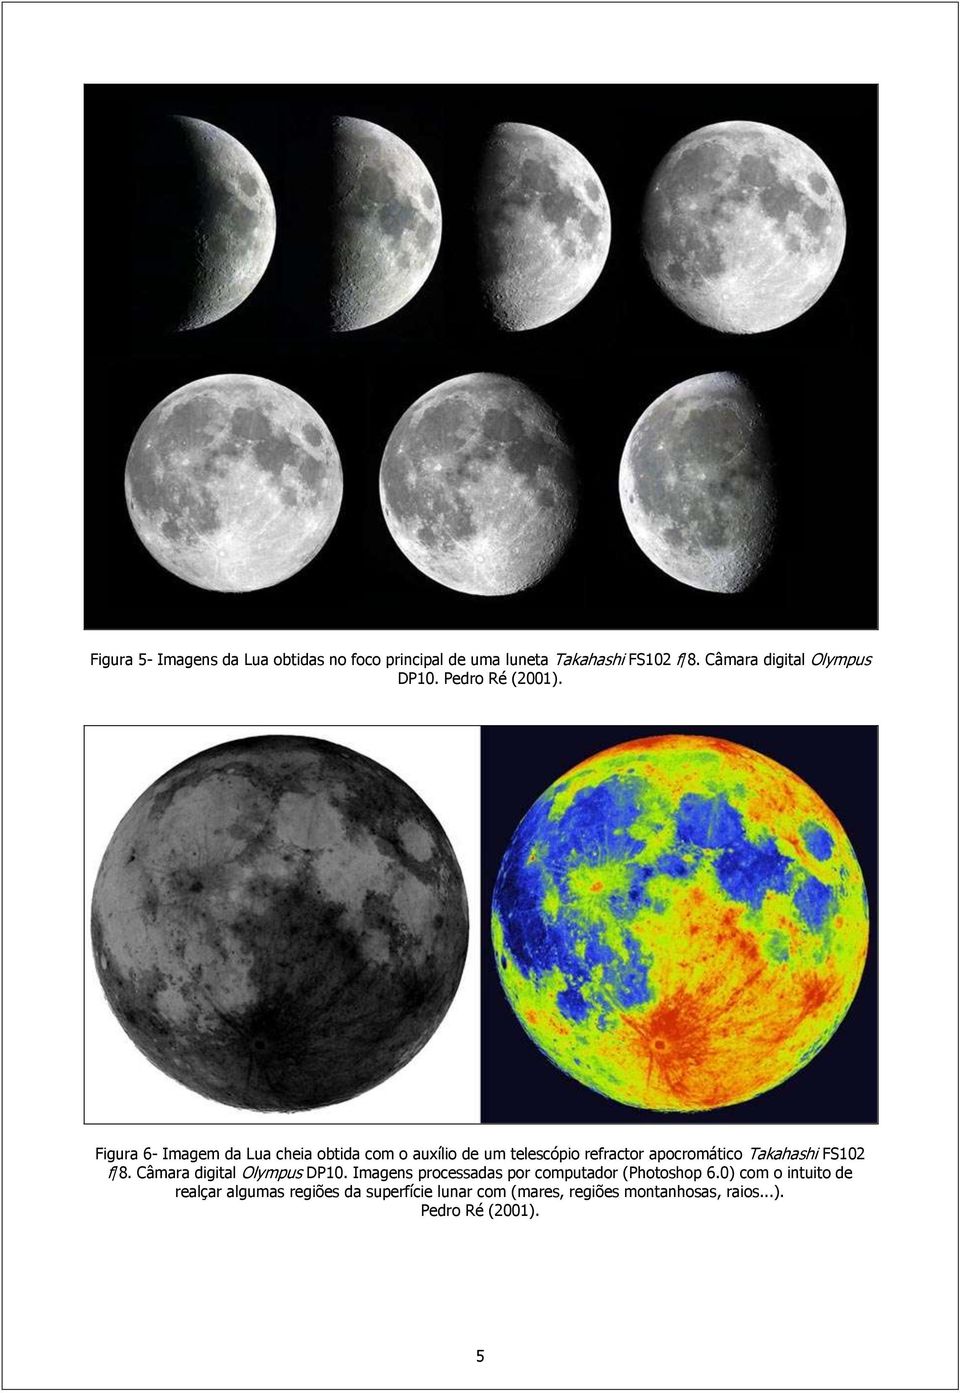 Figura 6- Imagem da Lua cheia obtida com o auxílio de um telescópio refractor apocromático Takahashi FS102 f/8.